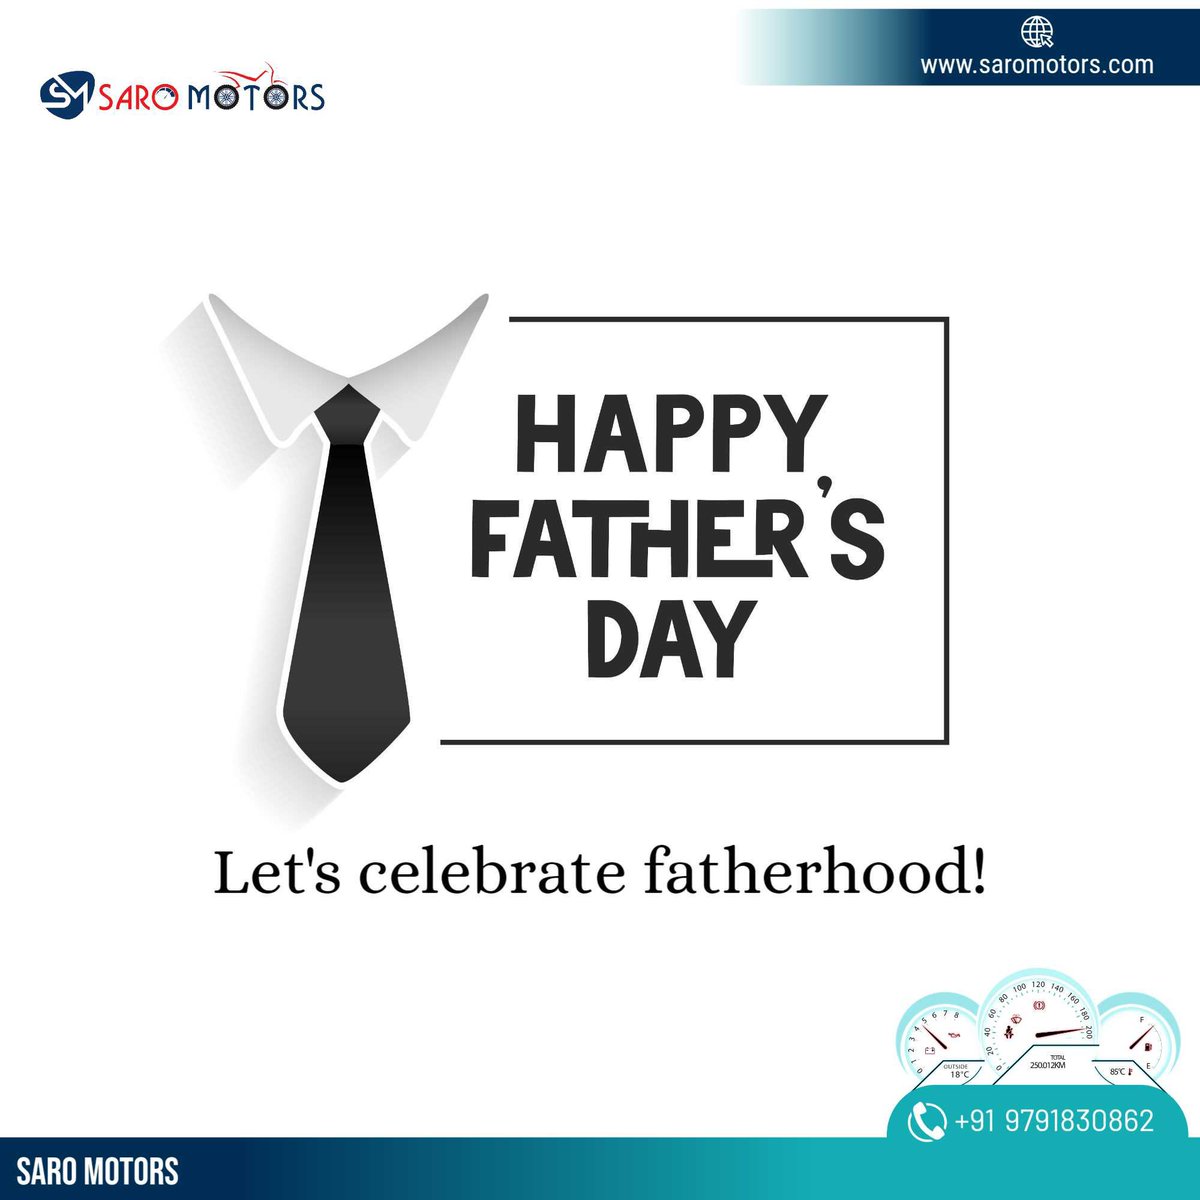 தந்தையர் தின நல்வாழ்த்துகள்!

#saromotors #HappyFathersDay #Fathersday2023 #bikeservice #electricscooter #SILAL #jayankondam